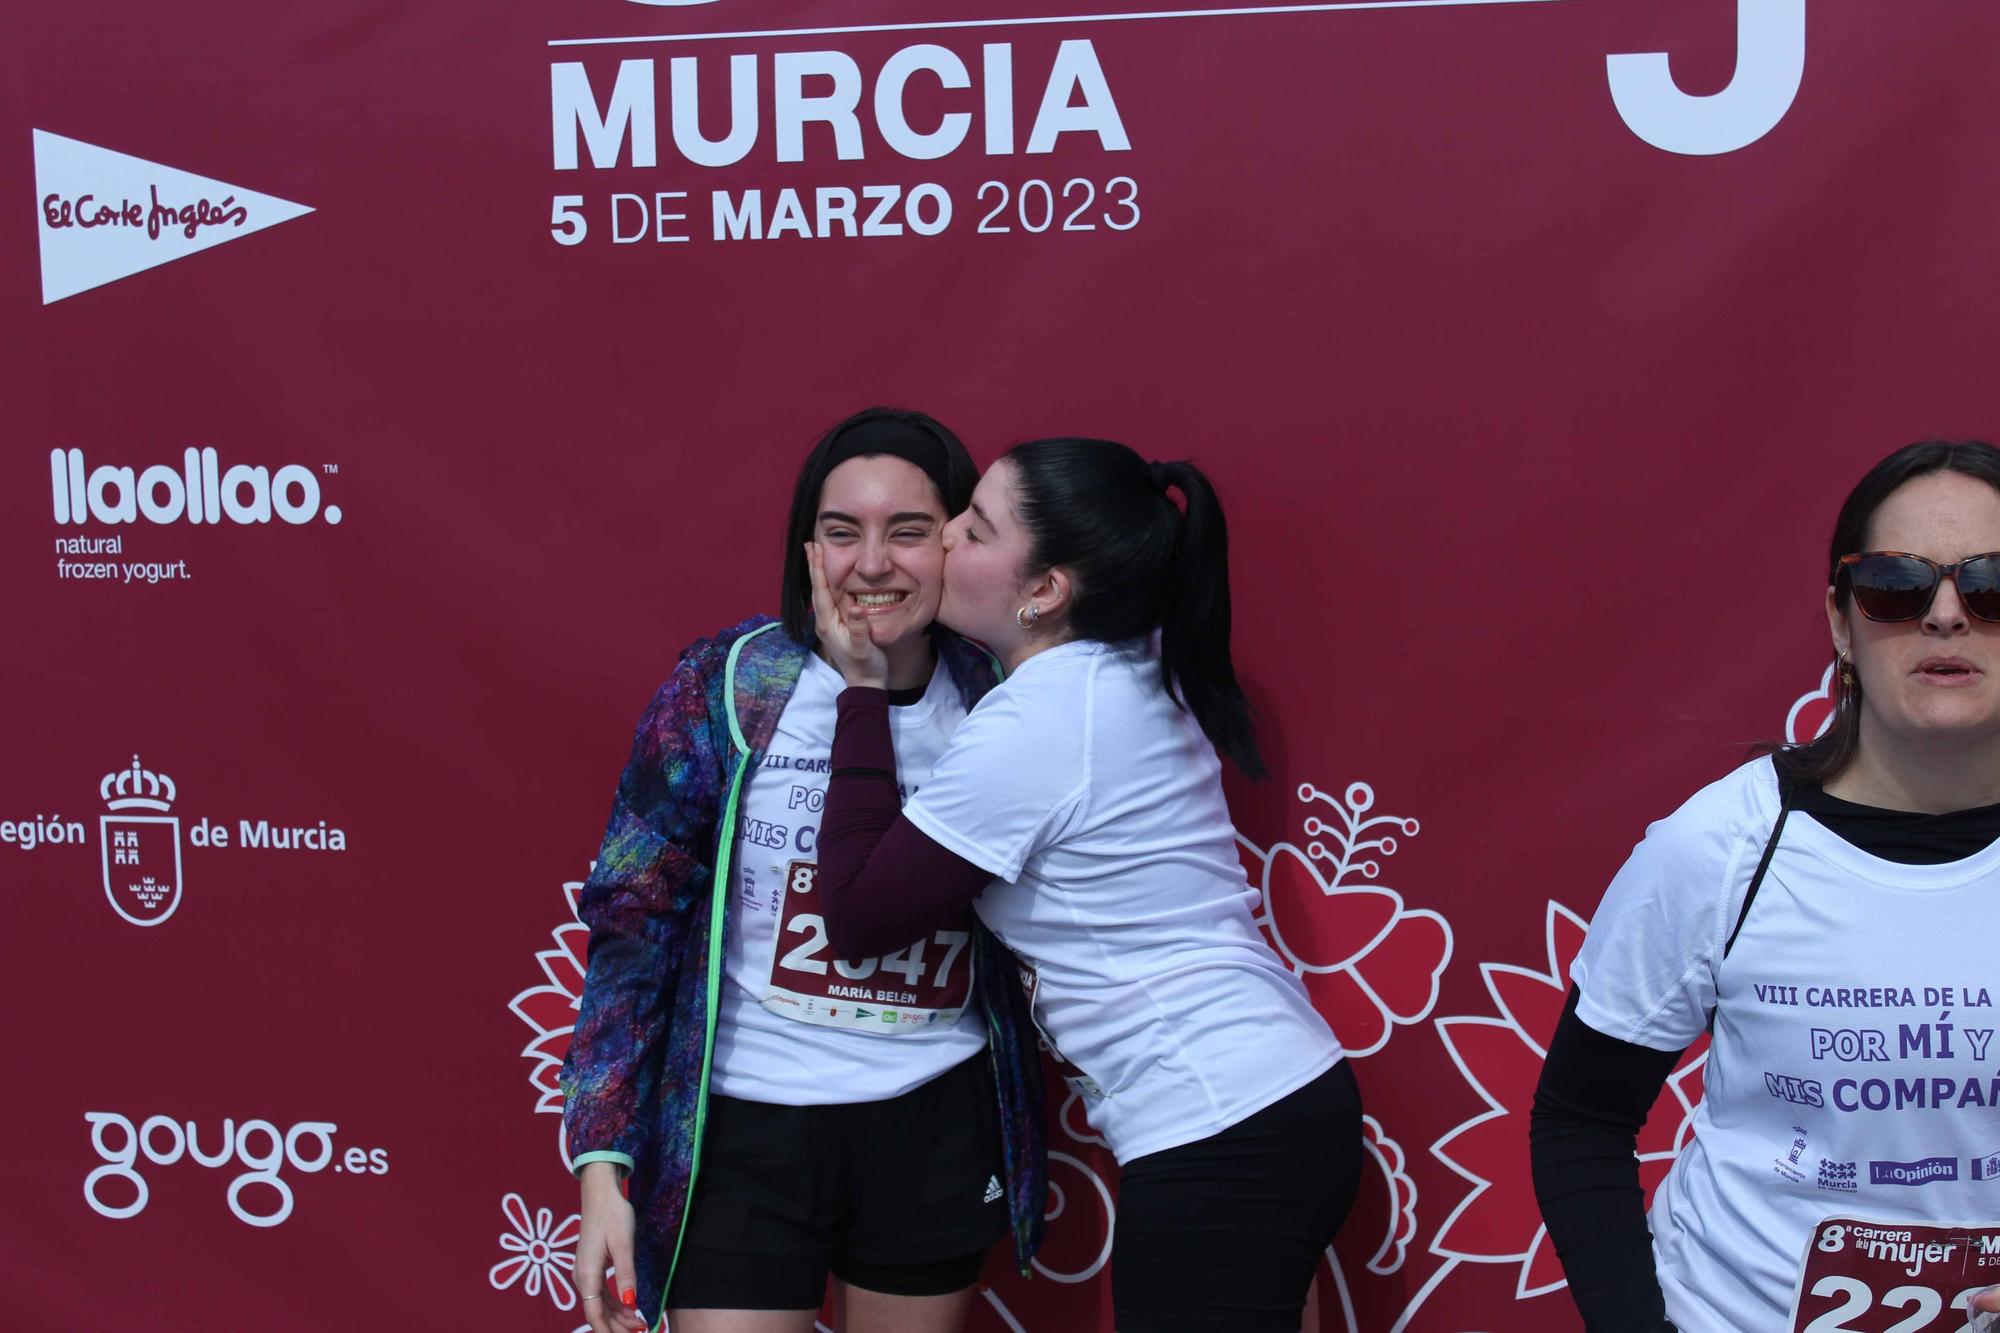 Carrera de la Mujer Murcia 2023: Photocall (4)